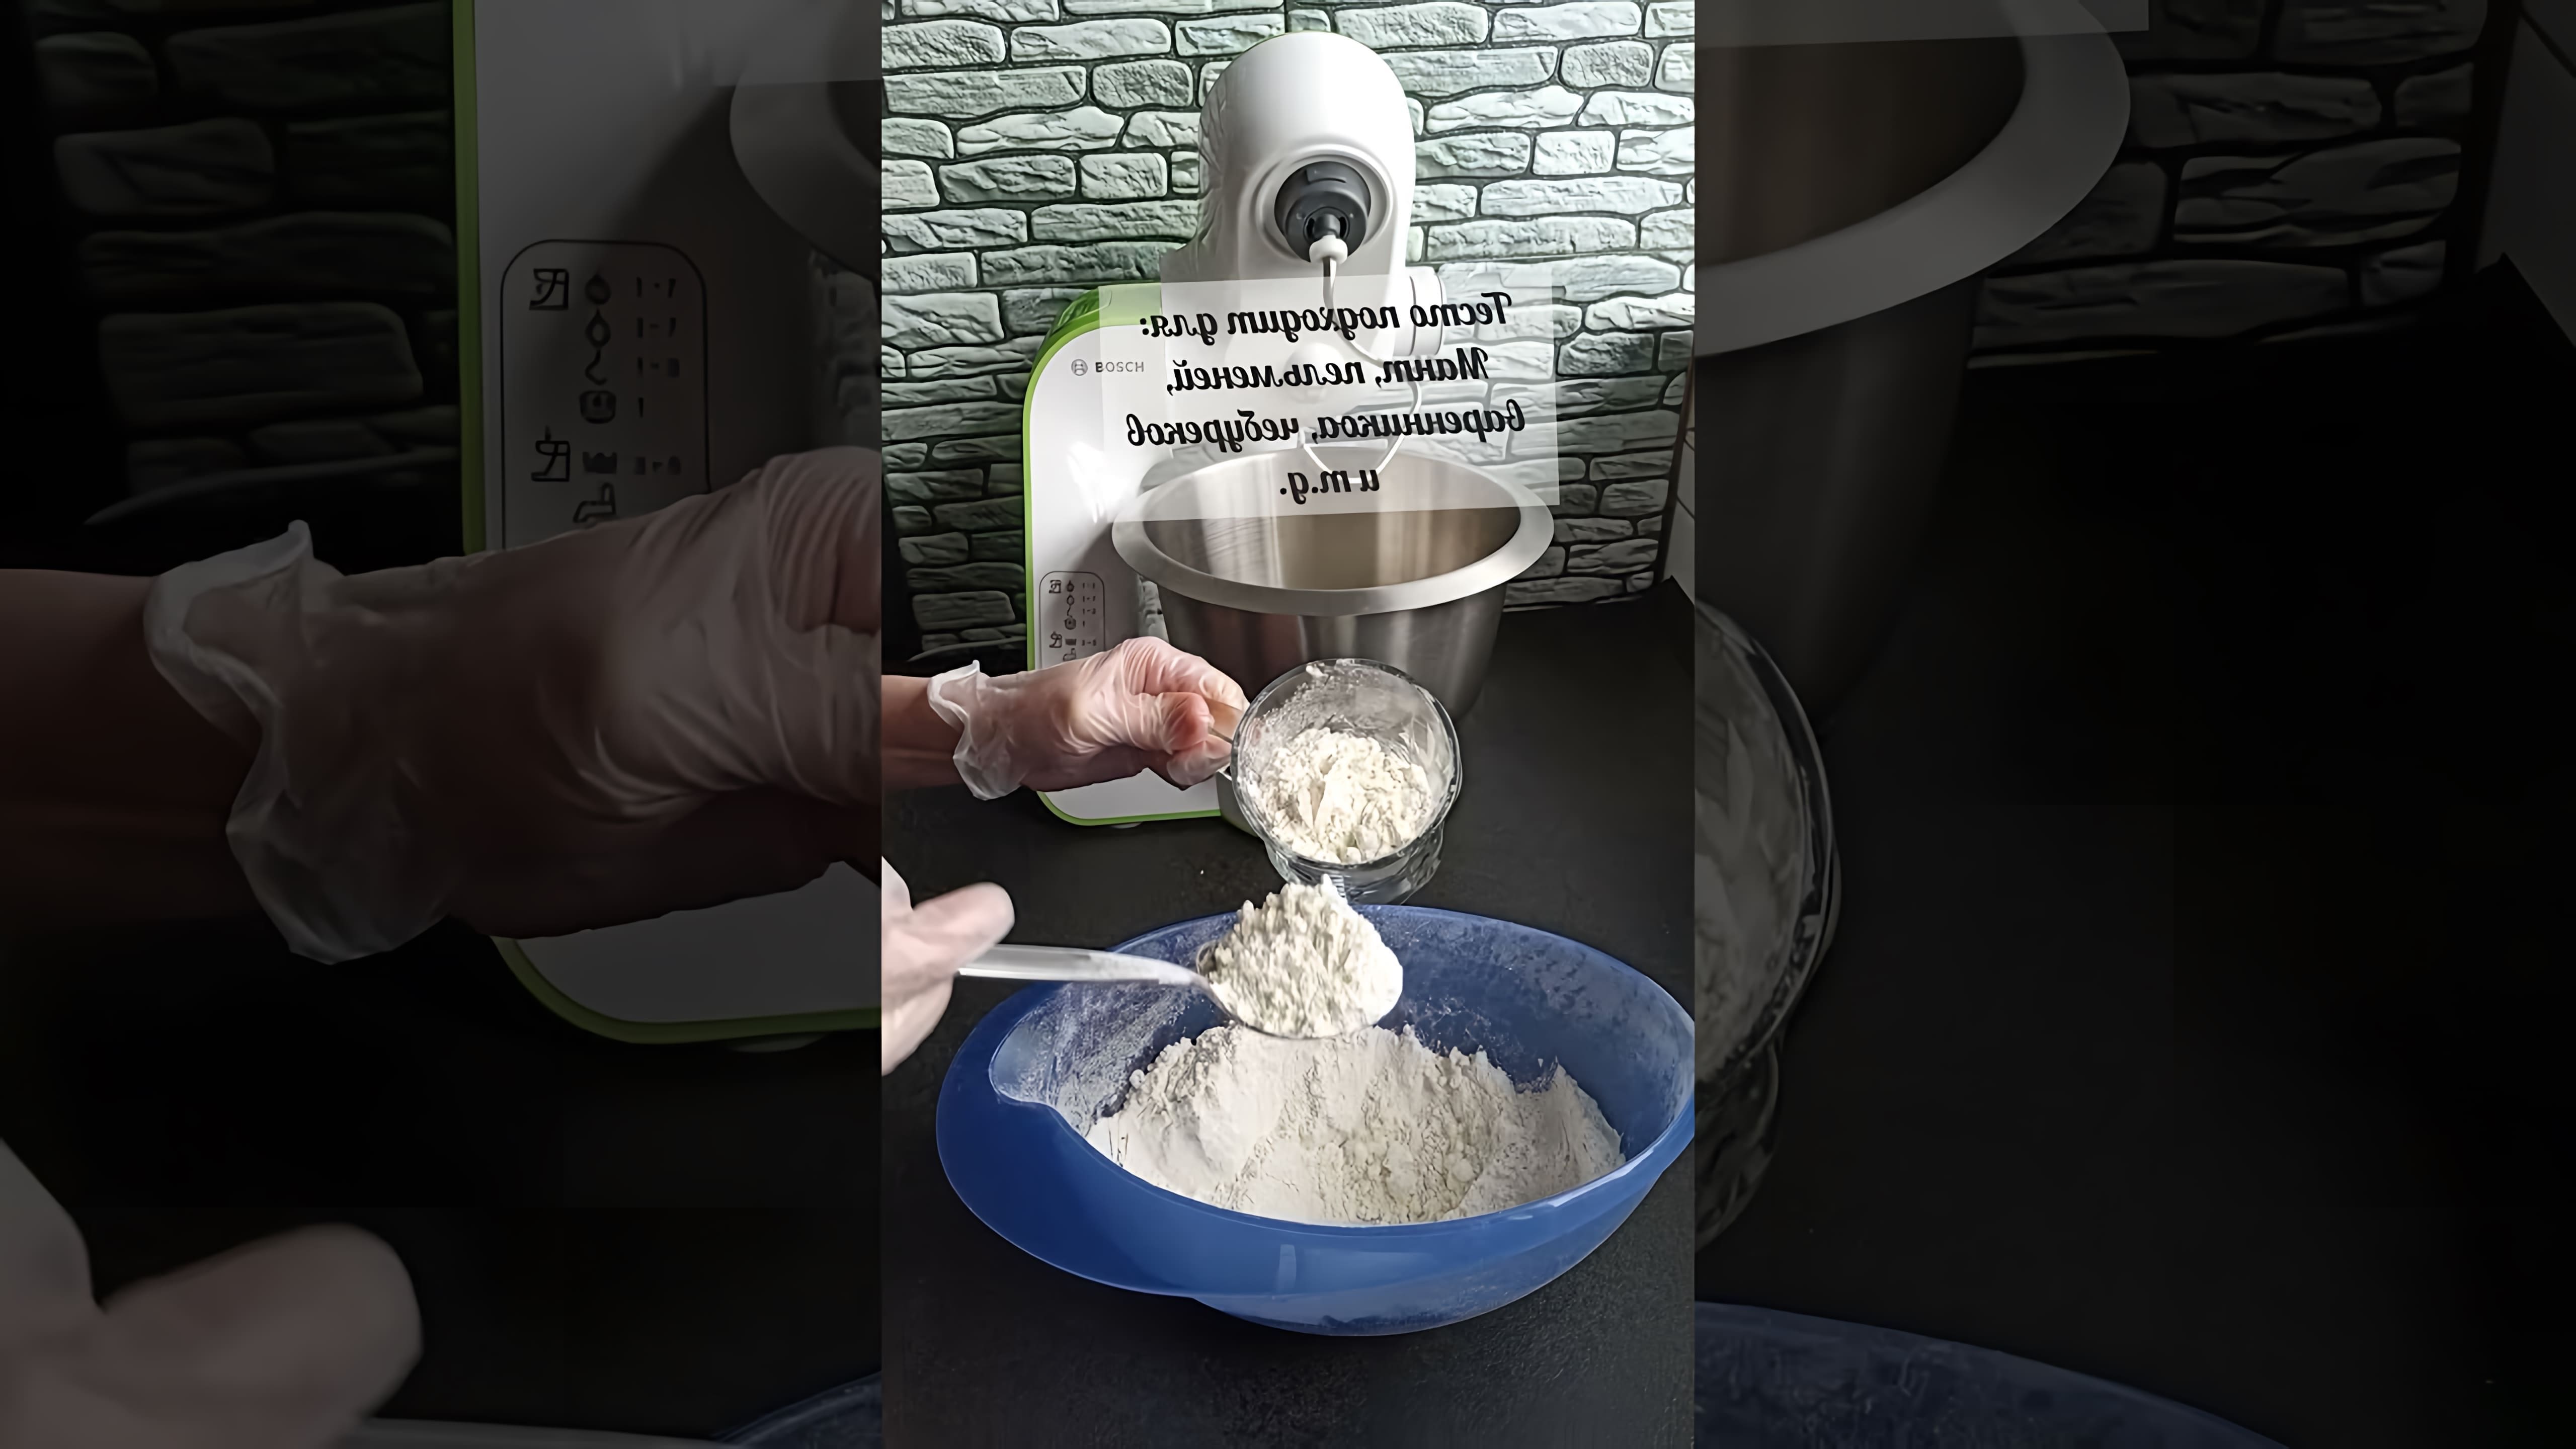 В этом видео демонстрируется процесс приготовления теста для различных видов выпечки, таких как пельмени, вареники, манты, чебуреки, чуду, галушки и т